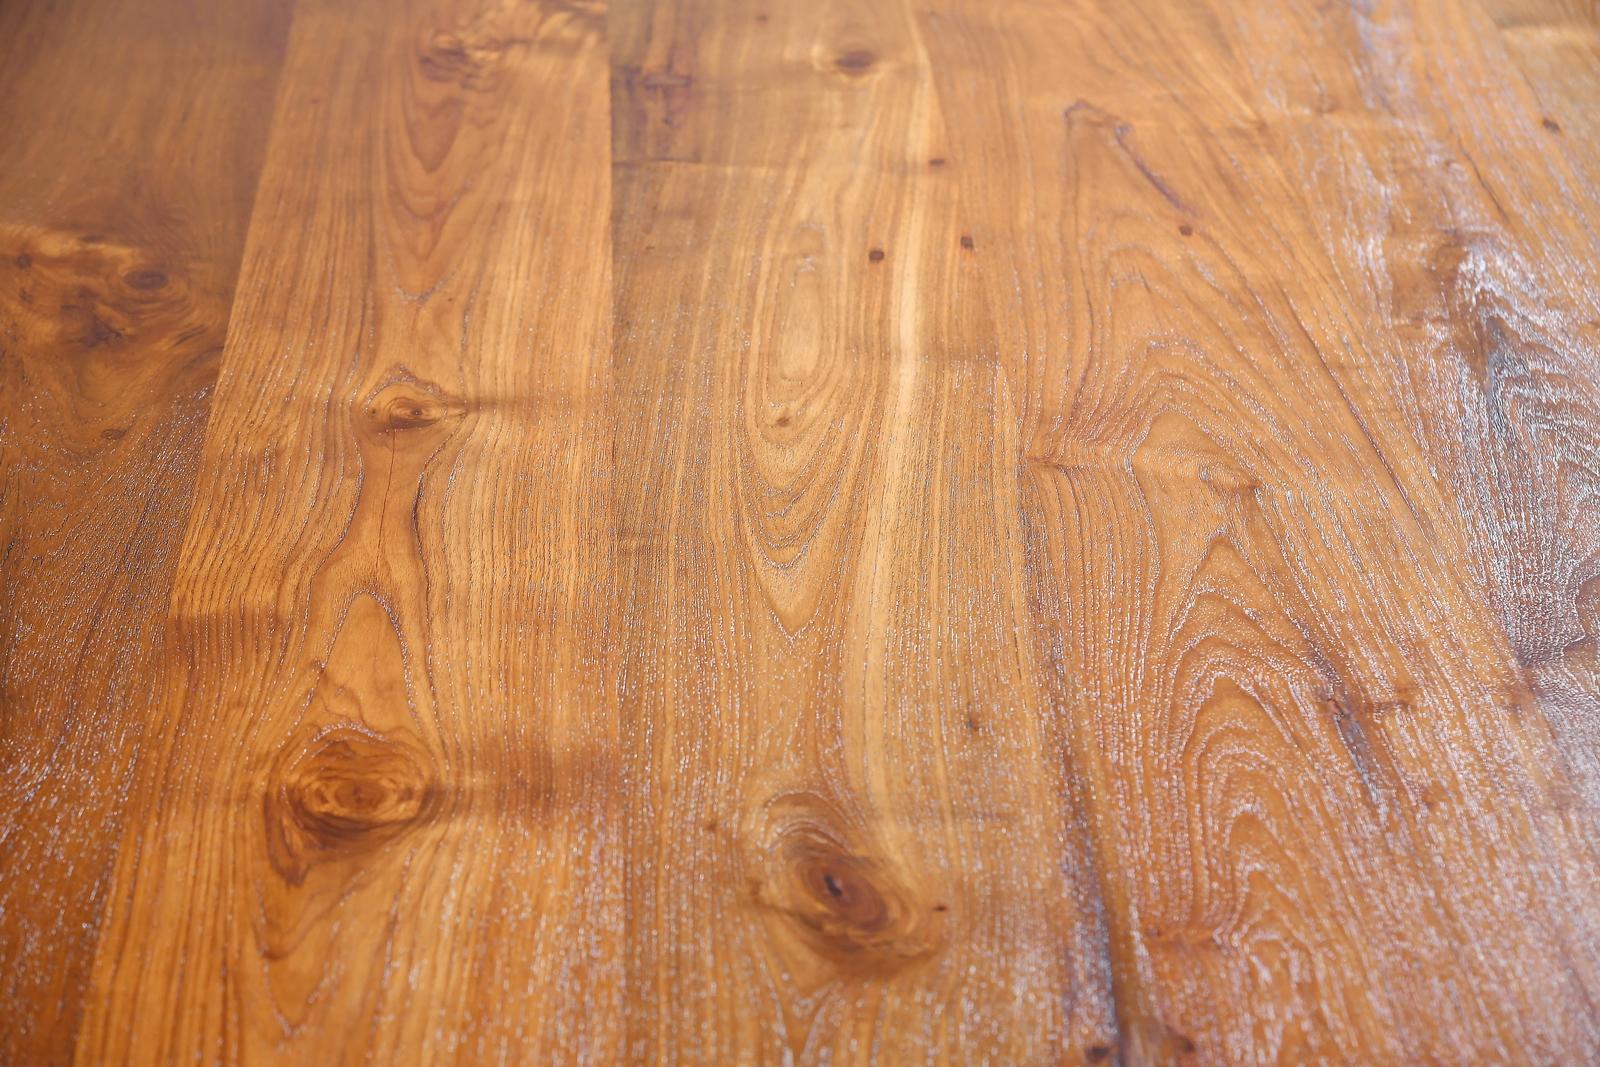 Bespoke Desk, Reclaimed Wood, Sand Cast Brass Base, by P. Tendercool For Sale 2